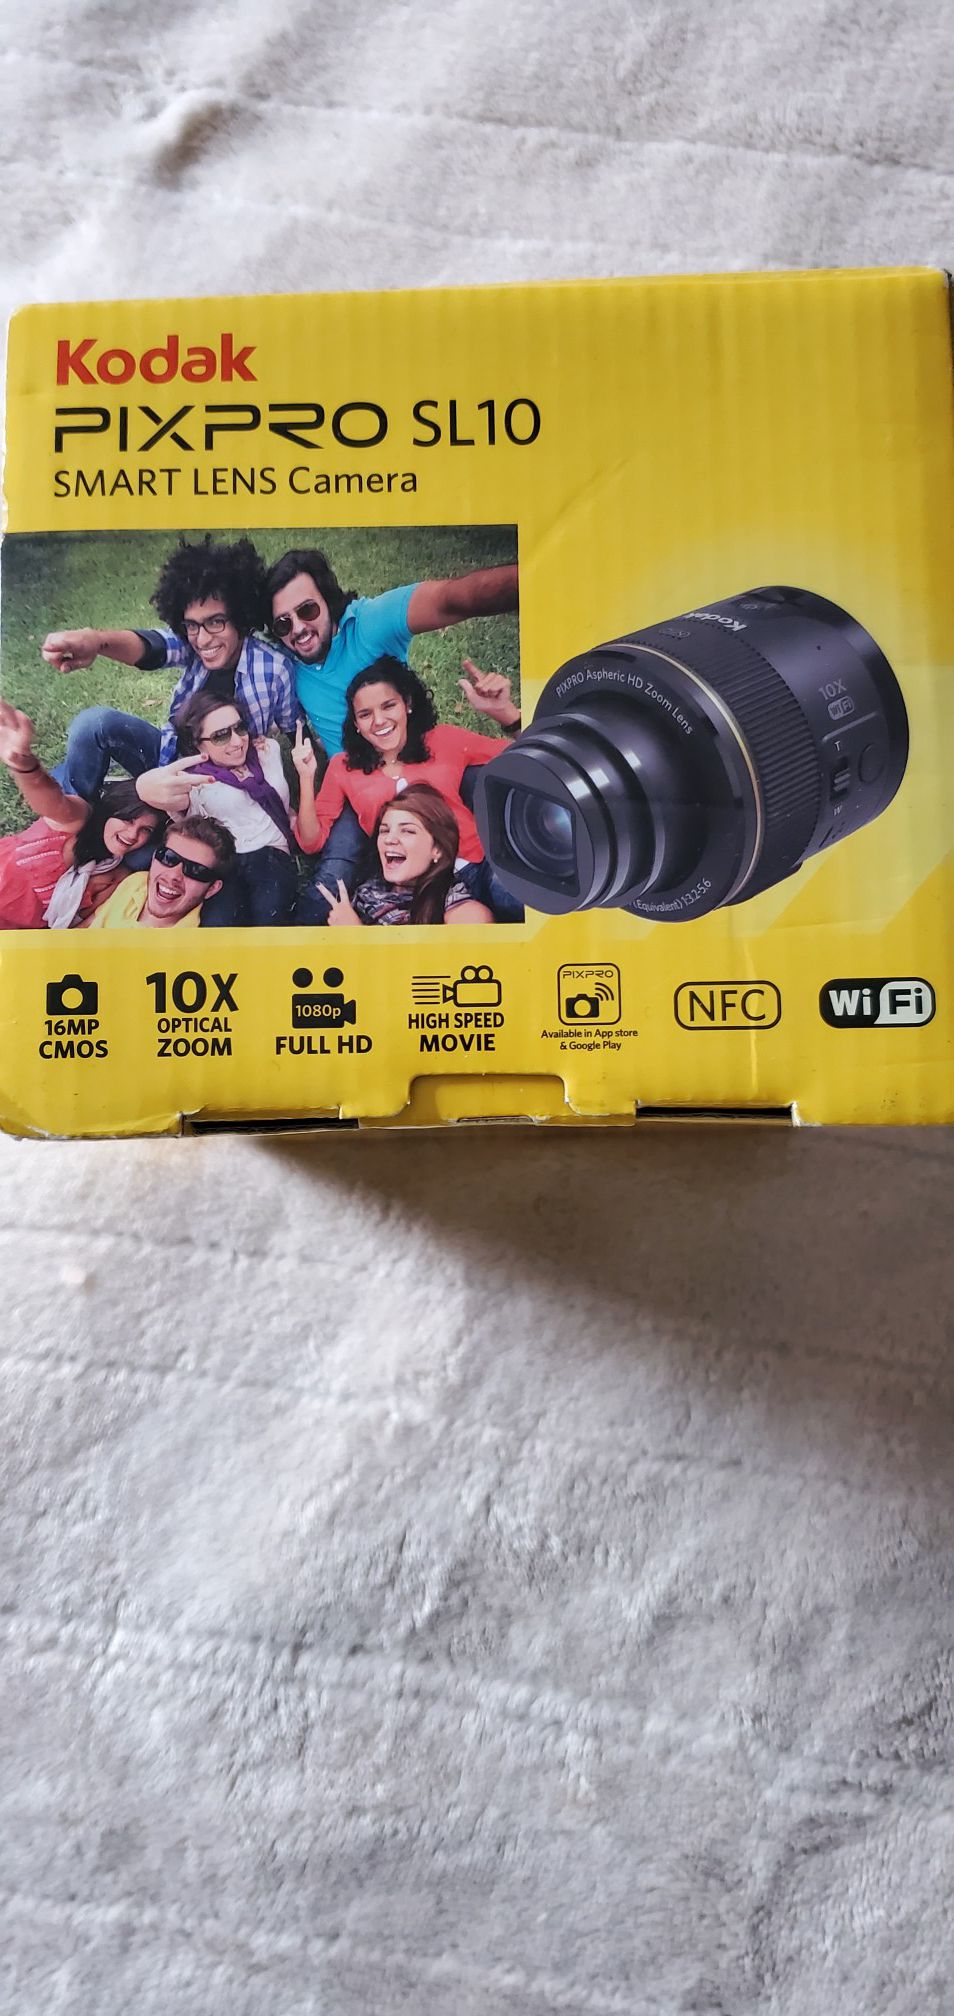 Kodak Pixpro sl10 Smart Lens Camera